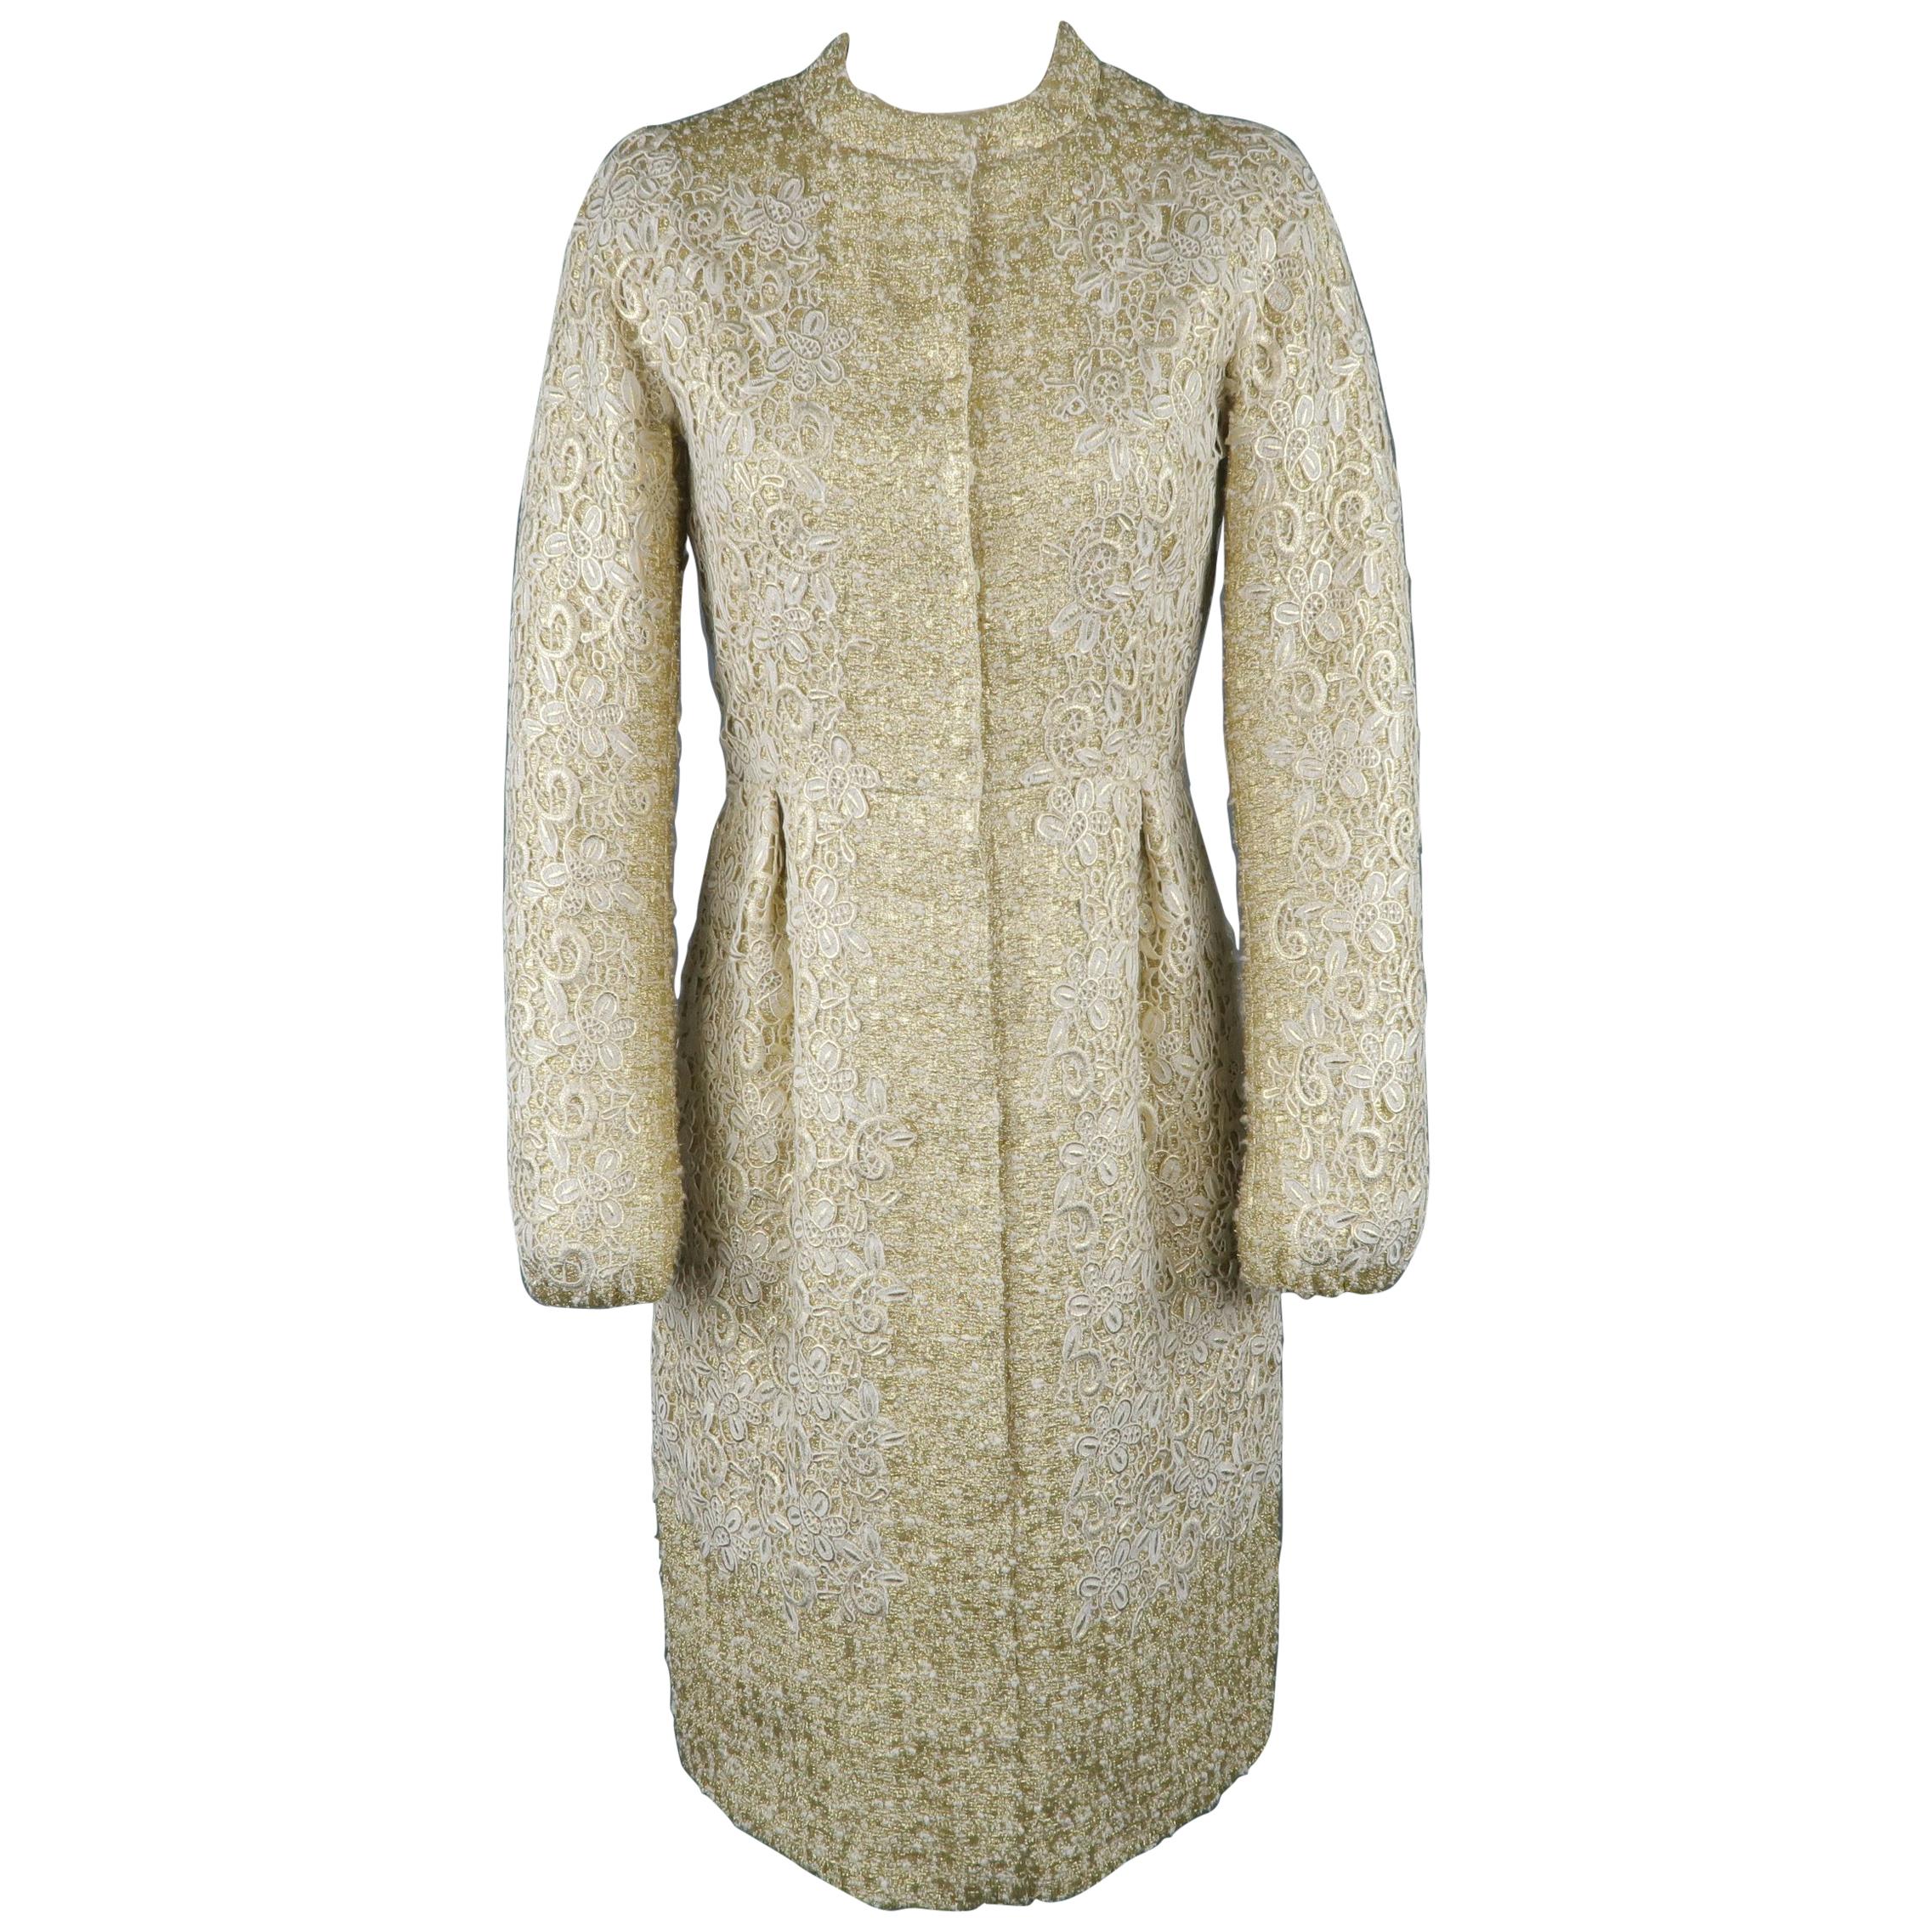 GIAMBATTISTA VALLI Metallic Gold Cotton / Silk Lace Overlay Cocktail Coat-Dress